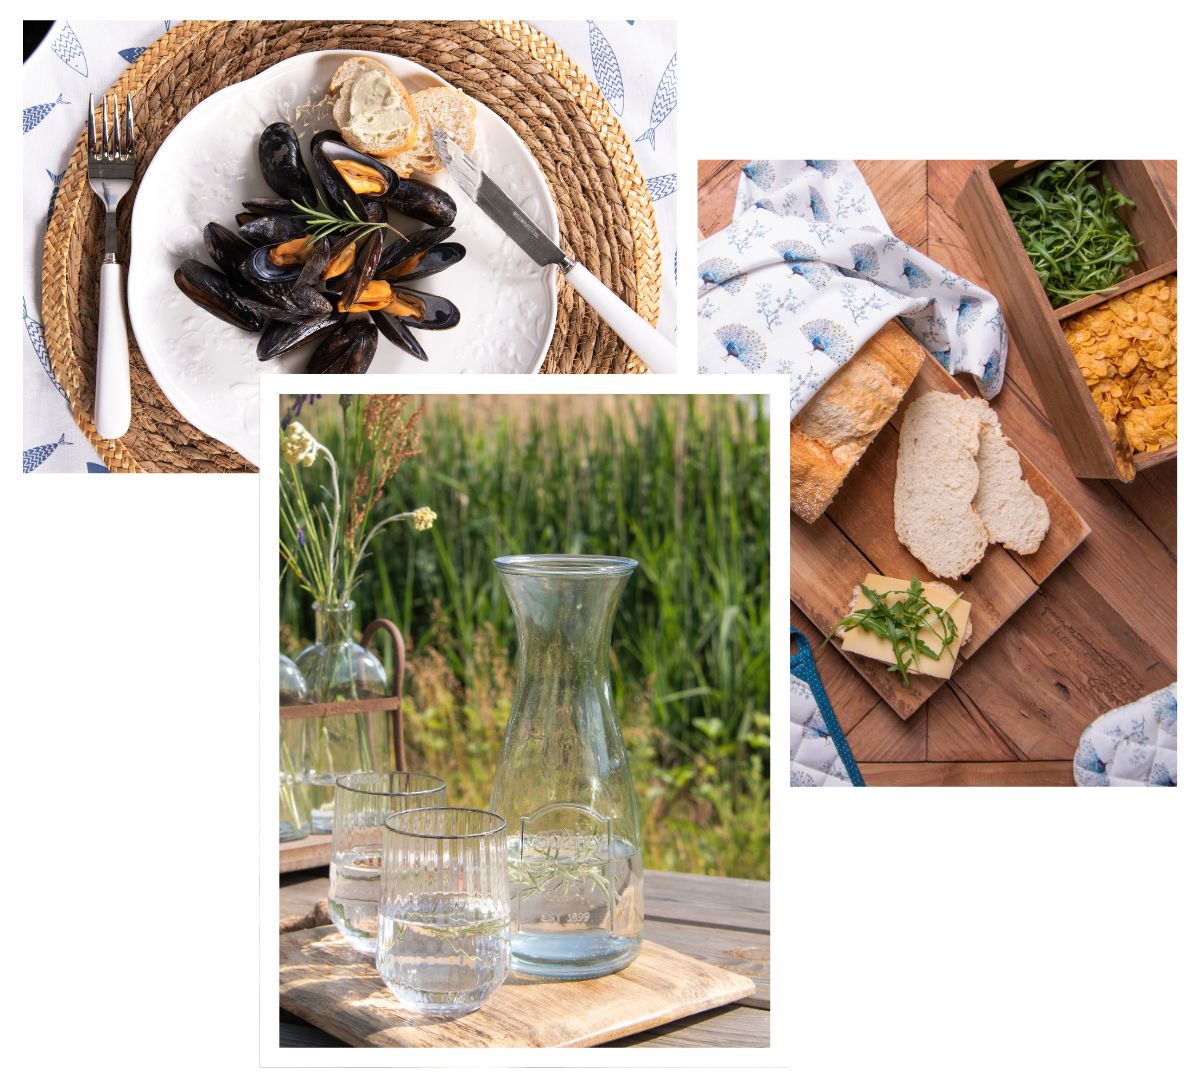 Collage von 3 Grillfotos. Ein Foto zeigt geschnittenes Baguette, ein Foto einer Karaffe mit Wasser und zwei Gläsern und ein Foto eines Tellers mit Muscheln auf einem Platzdeckchen.